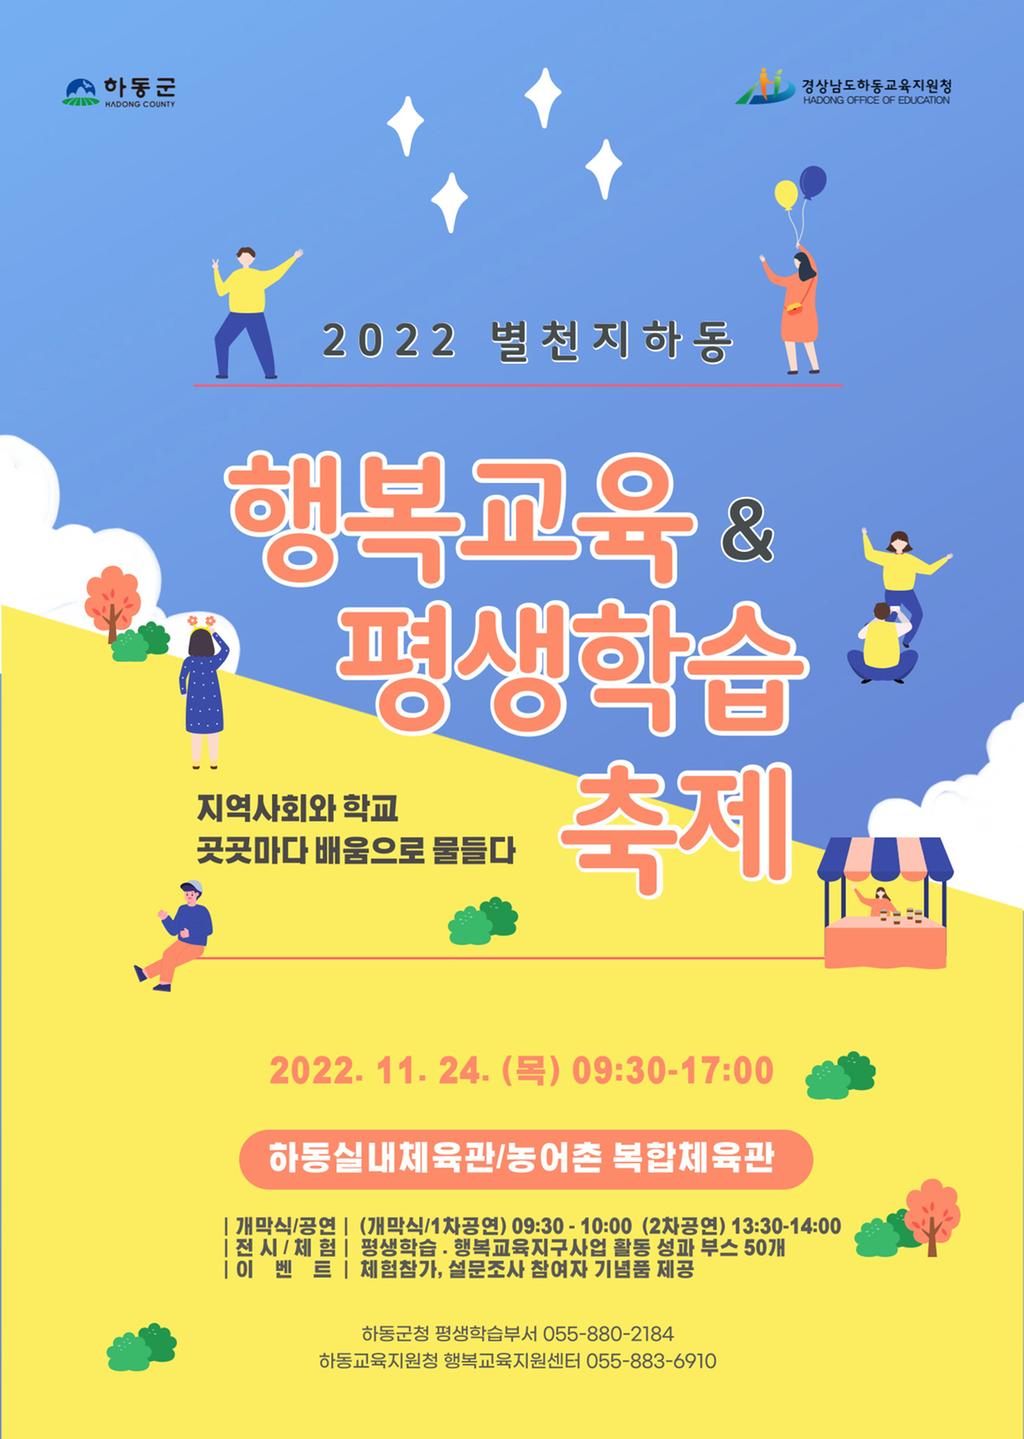 2022 별천지하동 행복교육&평생학습 축제 개최 알림